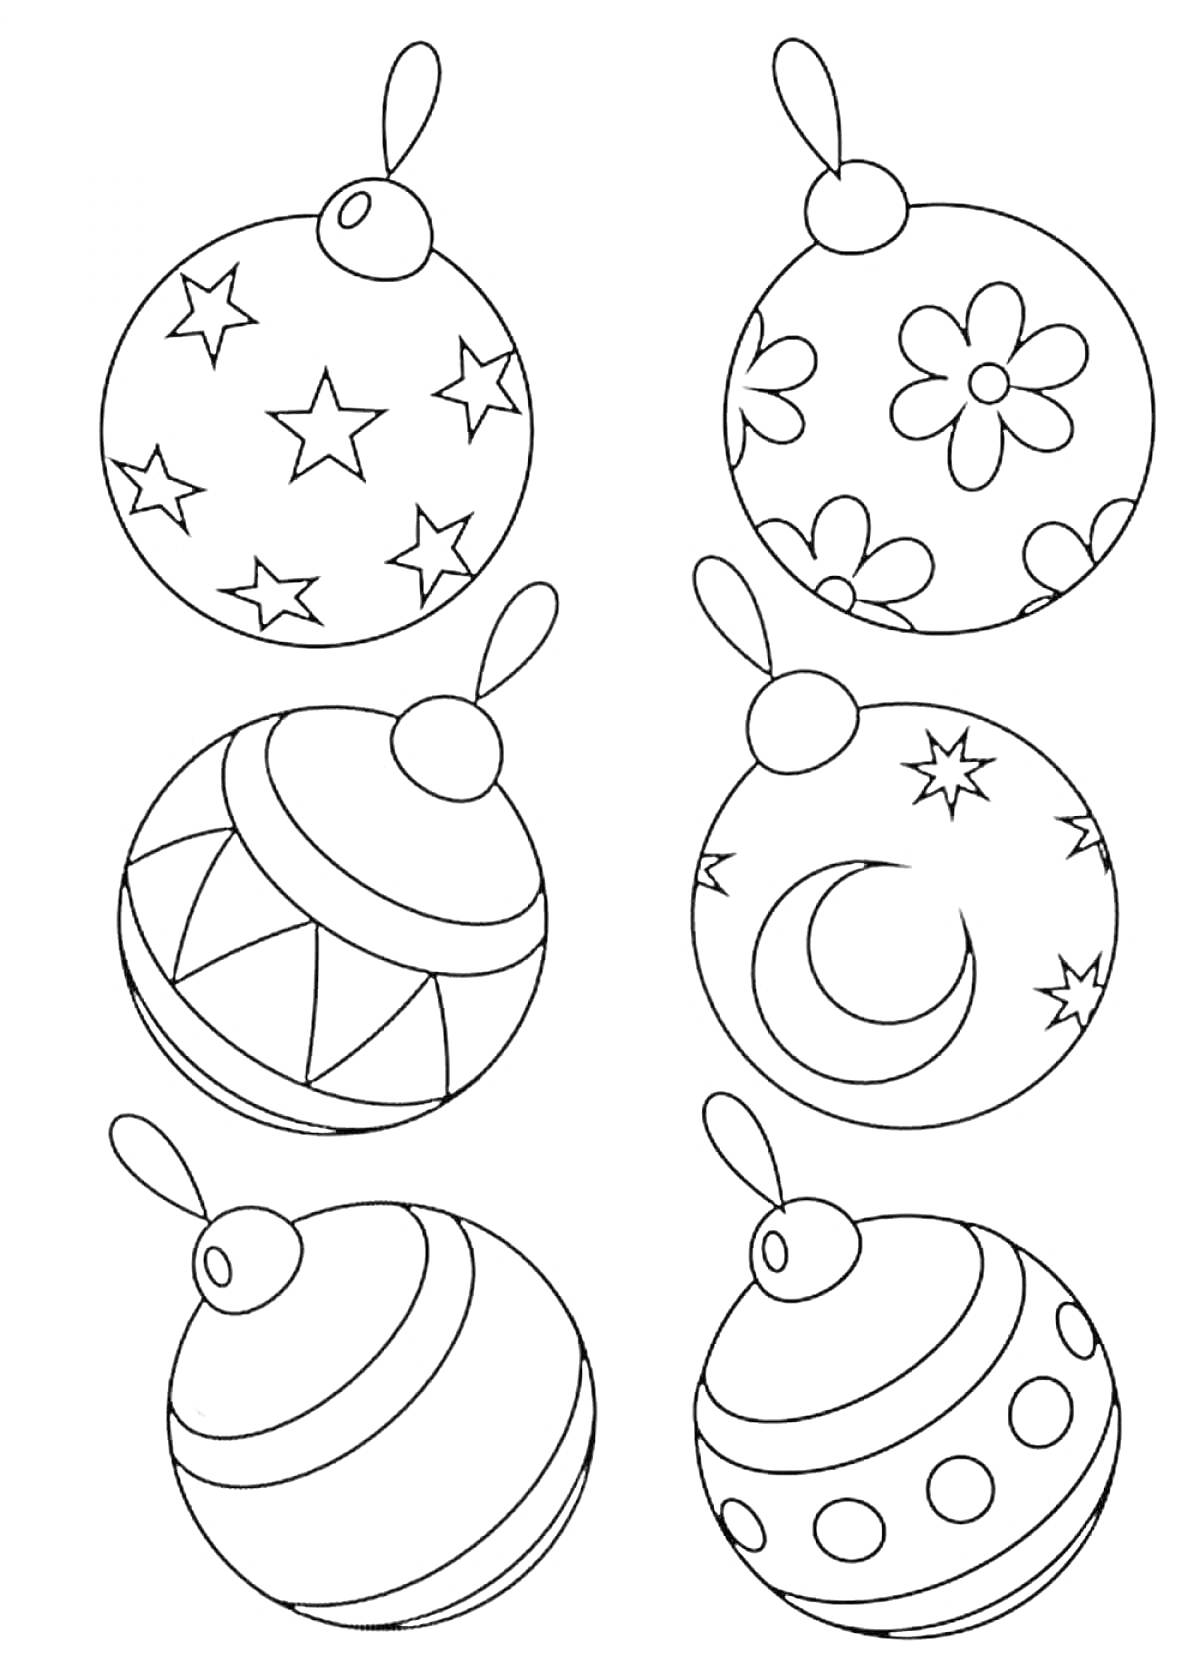 Раскраска Раскраска с изображением шести новогодних шаров со звездами, цветами, геометрическими фигурами, полумесяцем, линиями и кружочками